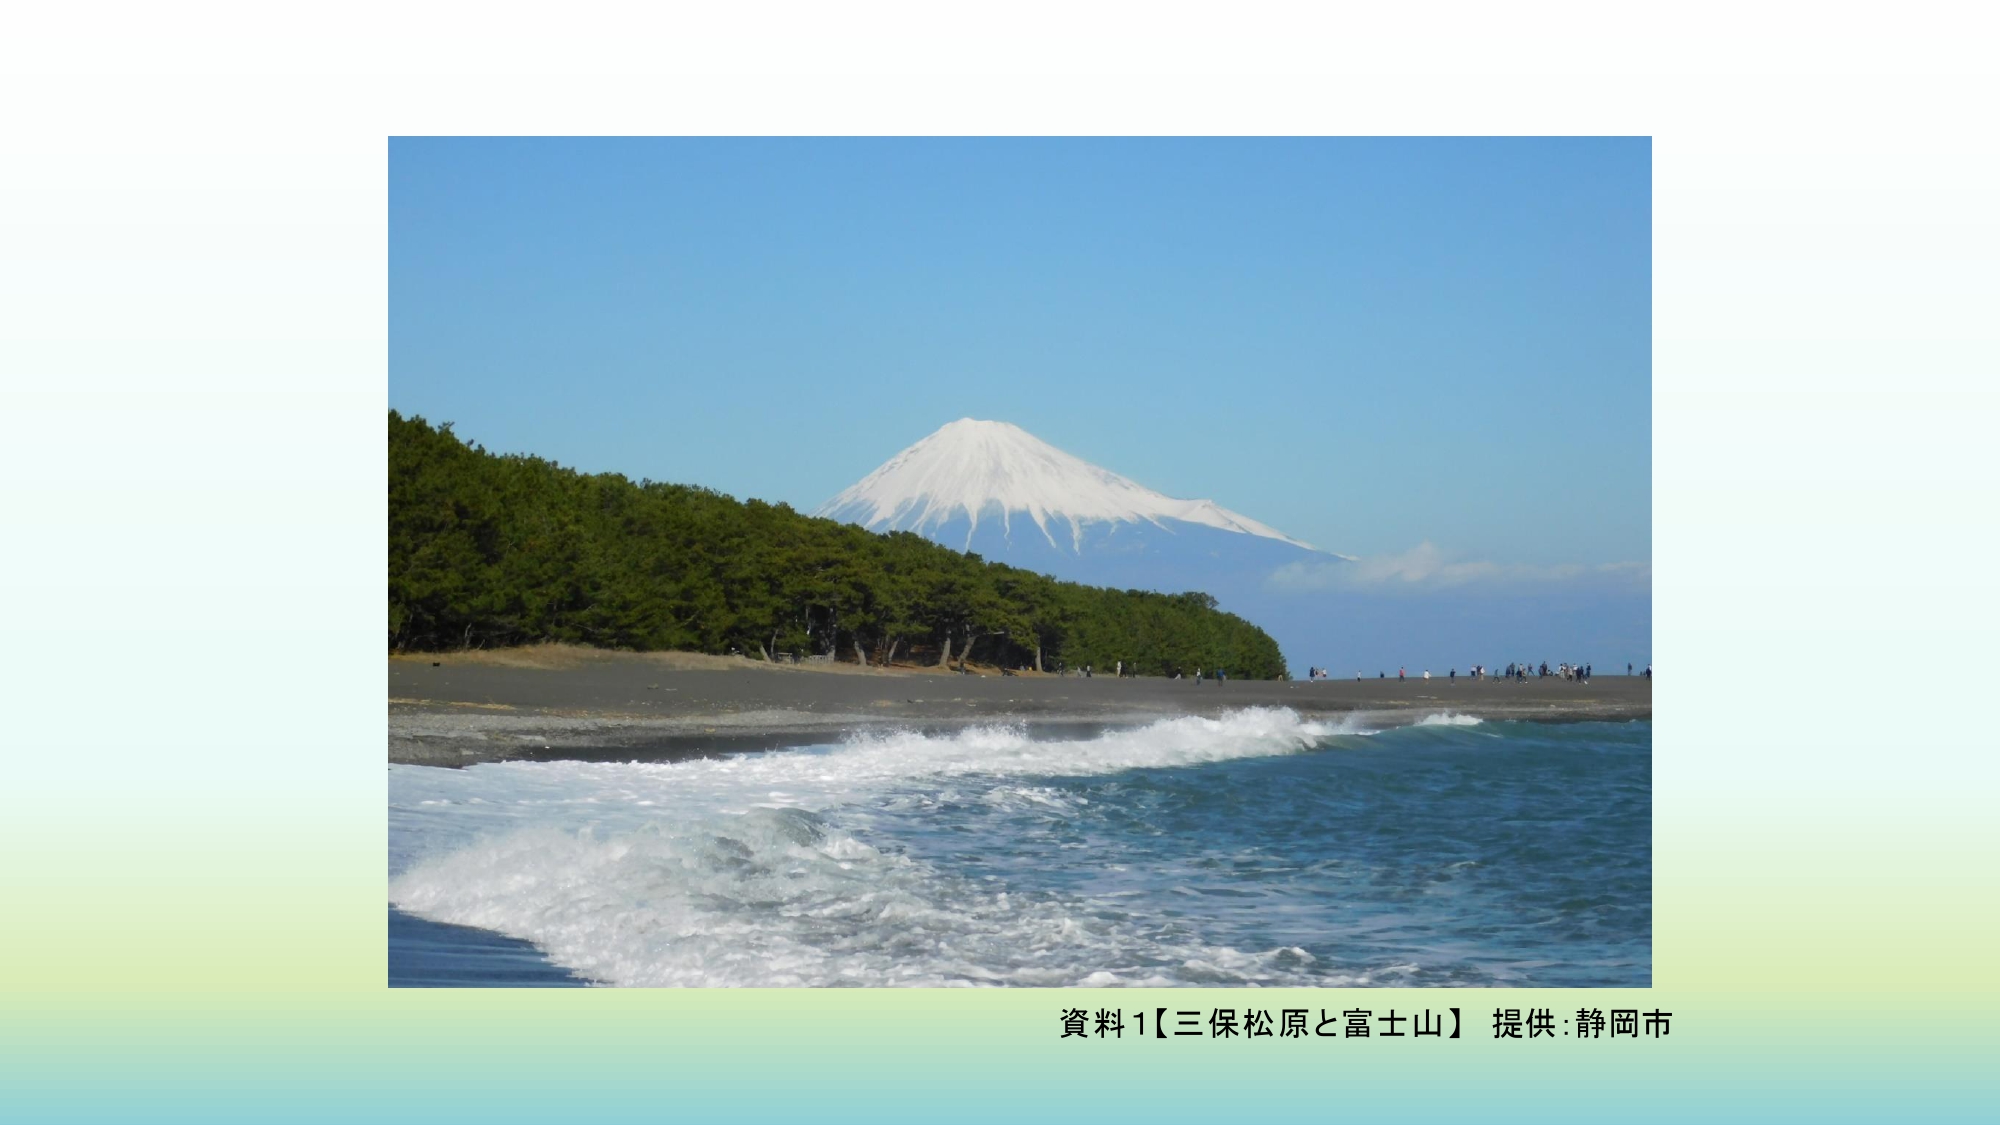 81191_011_32283302_1_1_資料１２３三保松原と富士山提供：静岡市（公開許可有）_page-0001